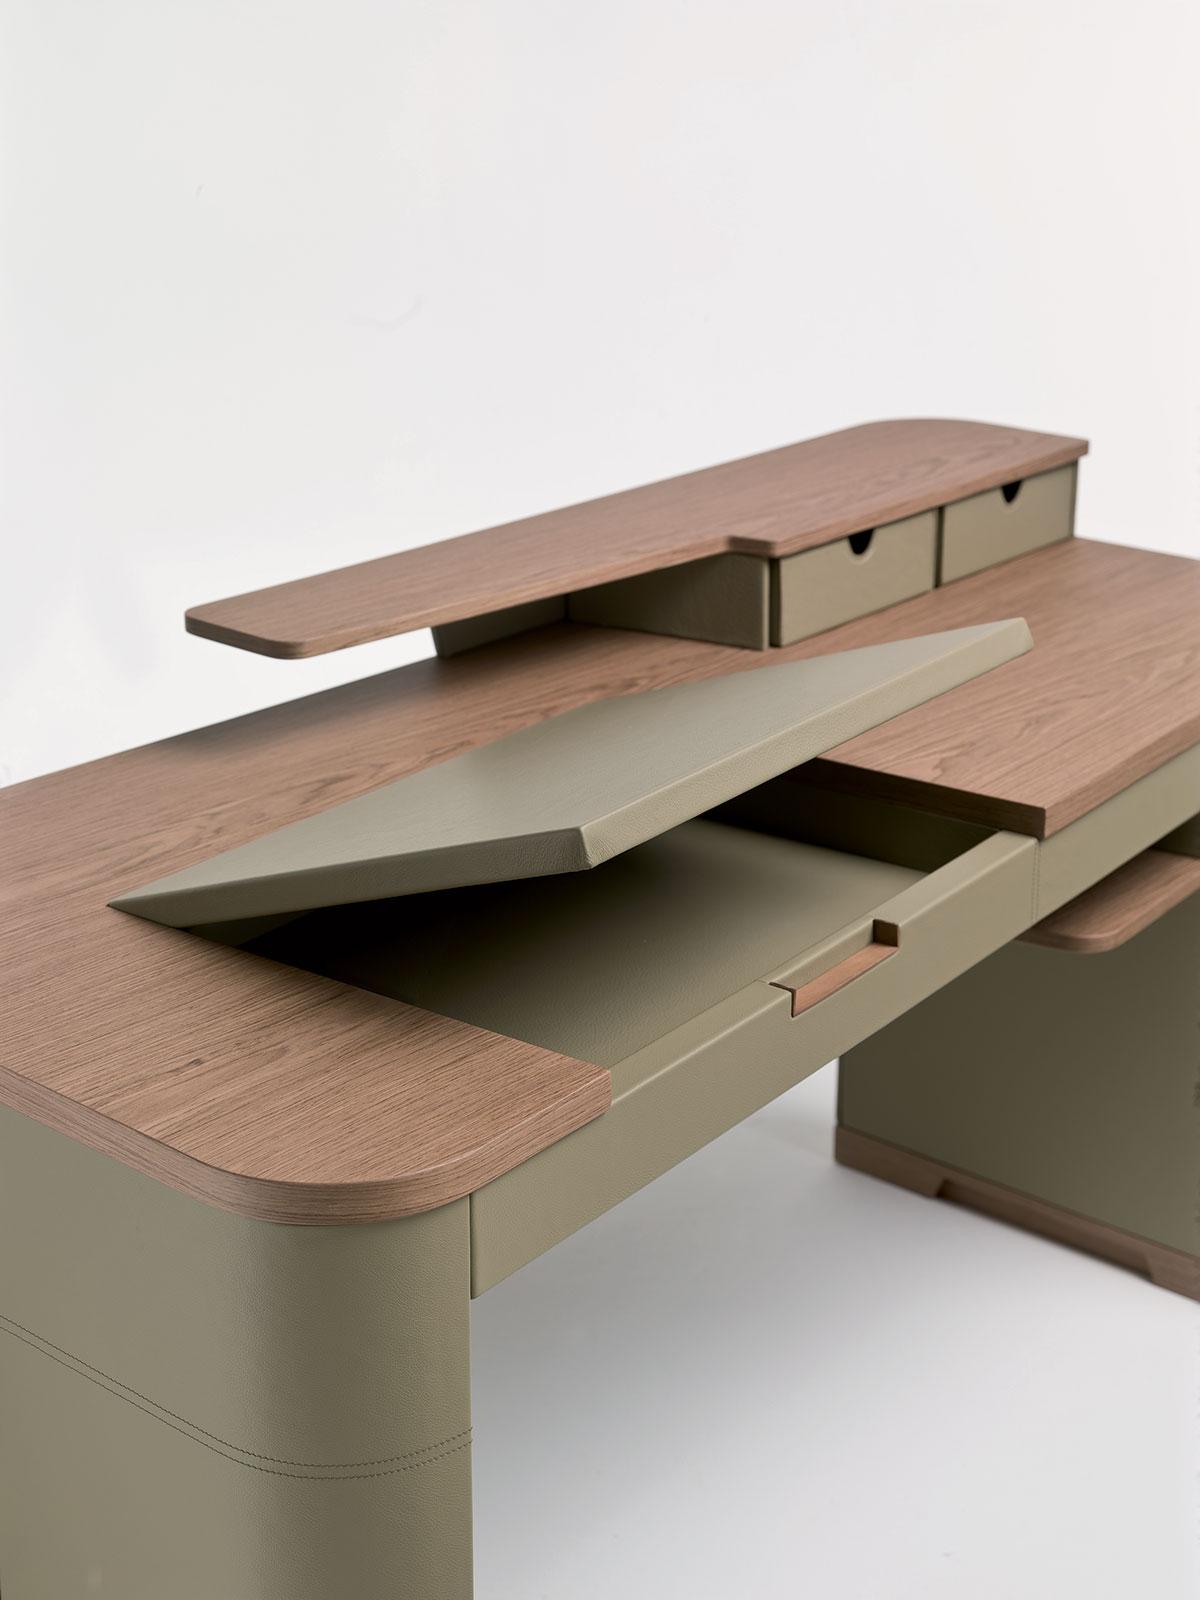 ameublement design haut de gamme luxe cuir de direction en ligne mobilier meuble design contemporains internet site italiens qualité bureau directionnel